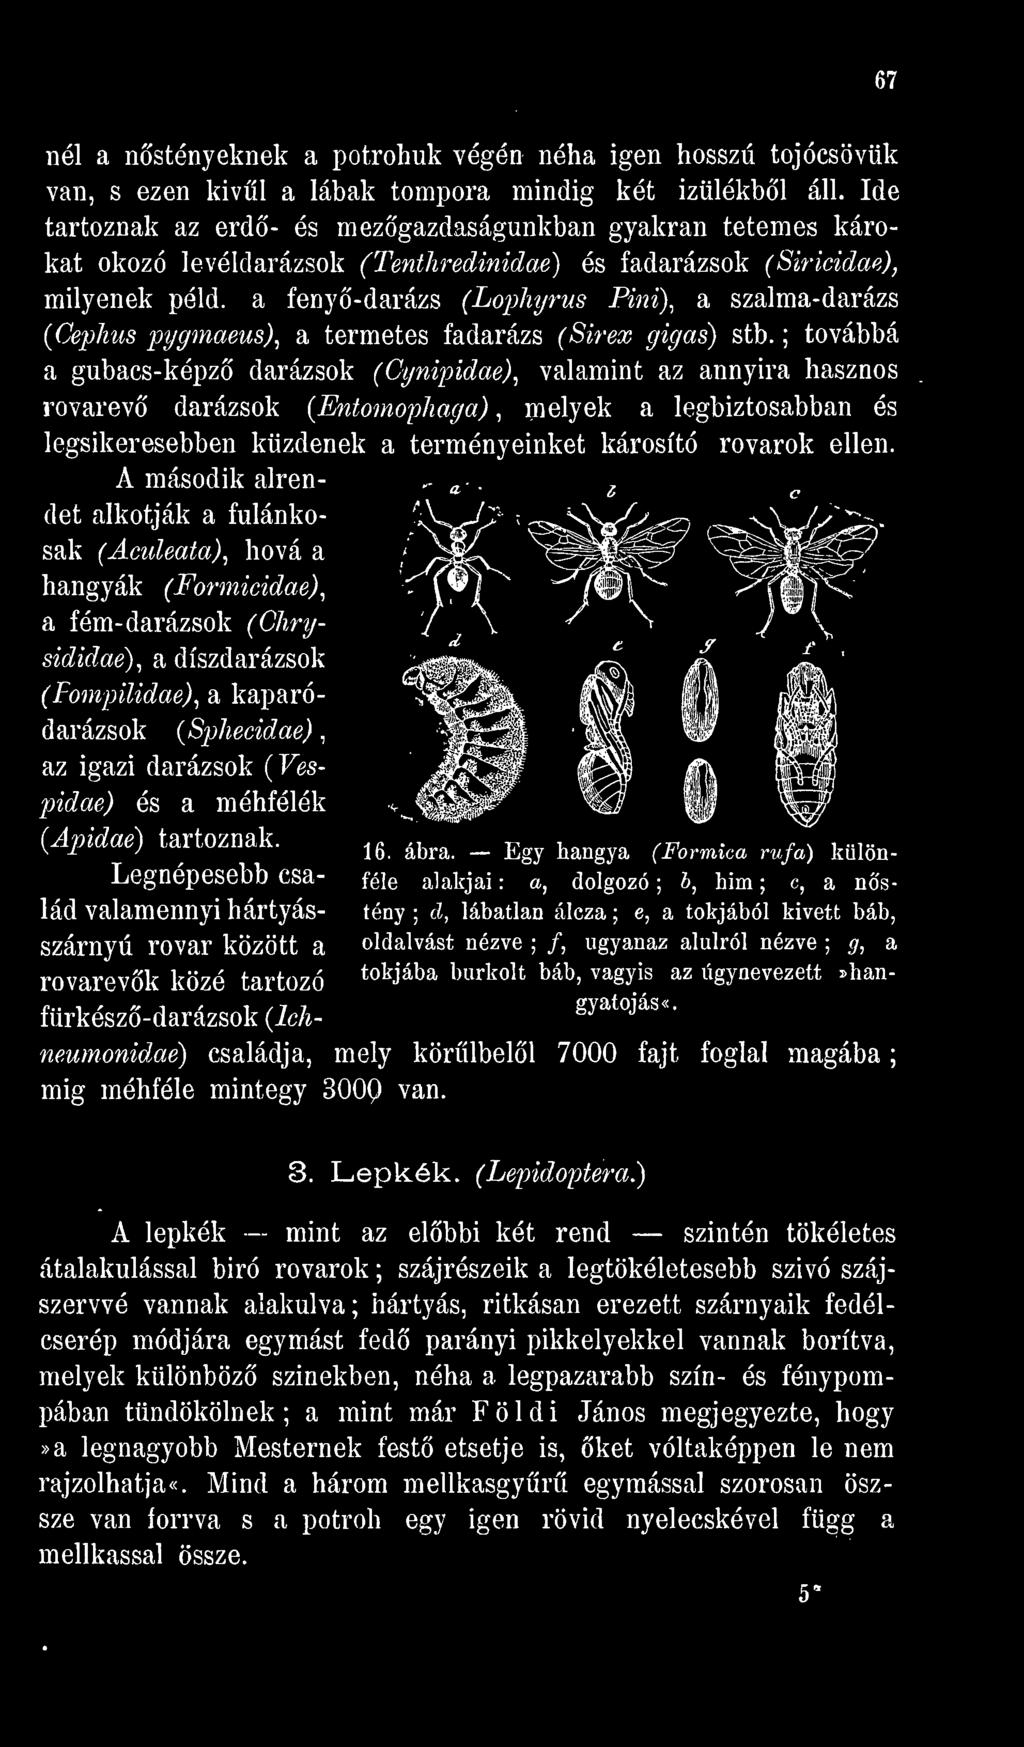 A második alrendet alkotják a fulánkosak (Aculeata), hová a hangyák a (Formicidae), fém- darázsok (Chrysididae), a díszdarázsok (Fompüidae), a kaparódarázsok (Sphecidae), az igazi darázsok (Vespidae)